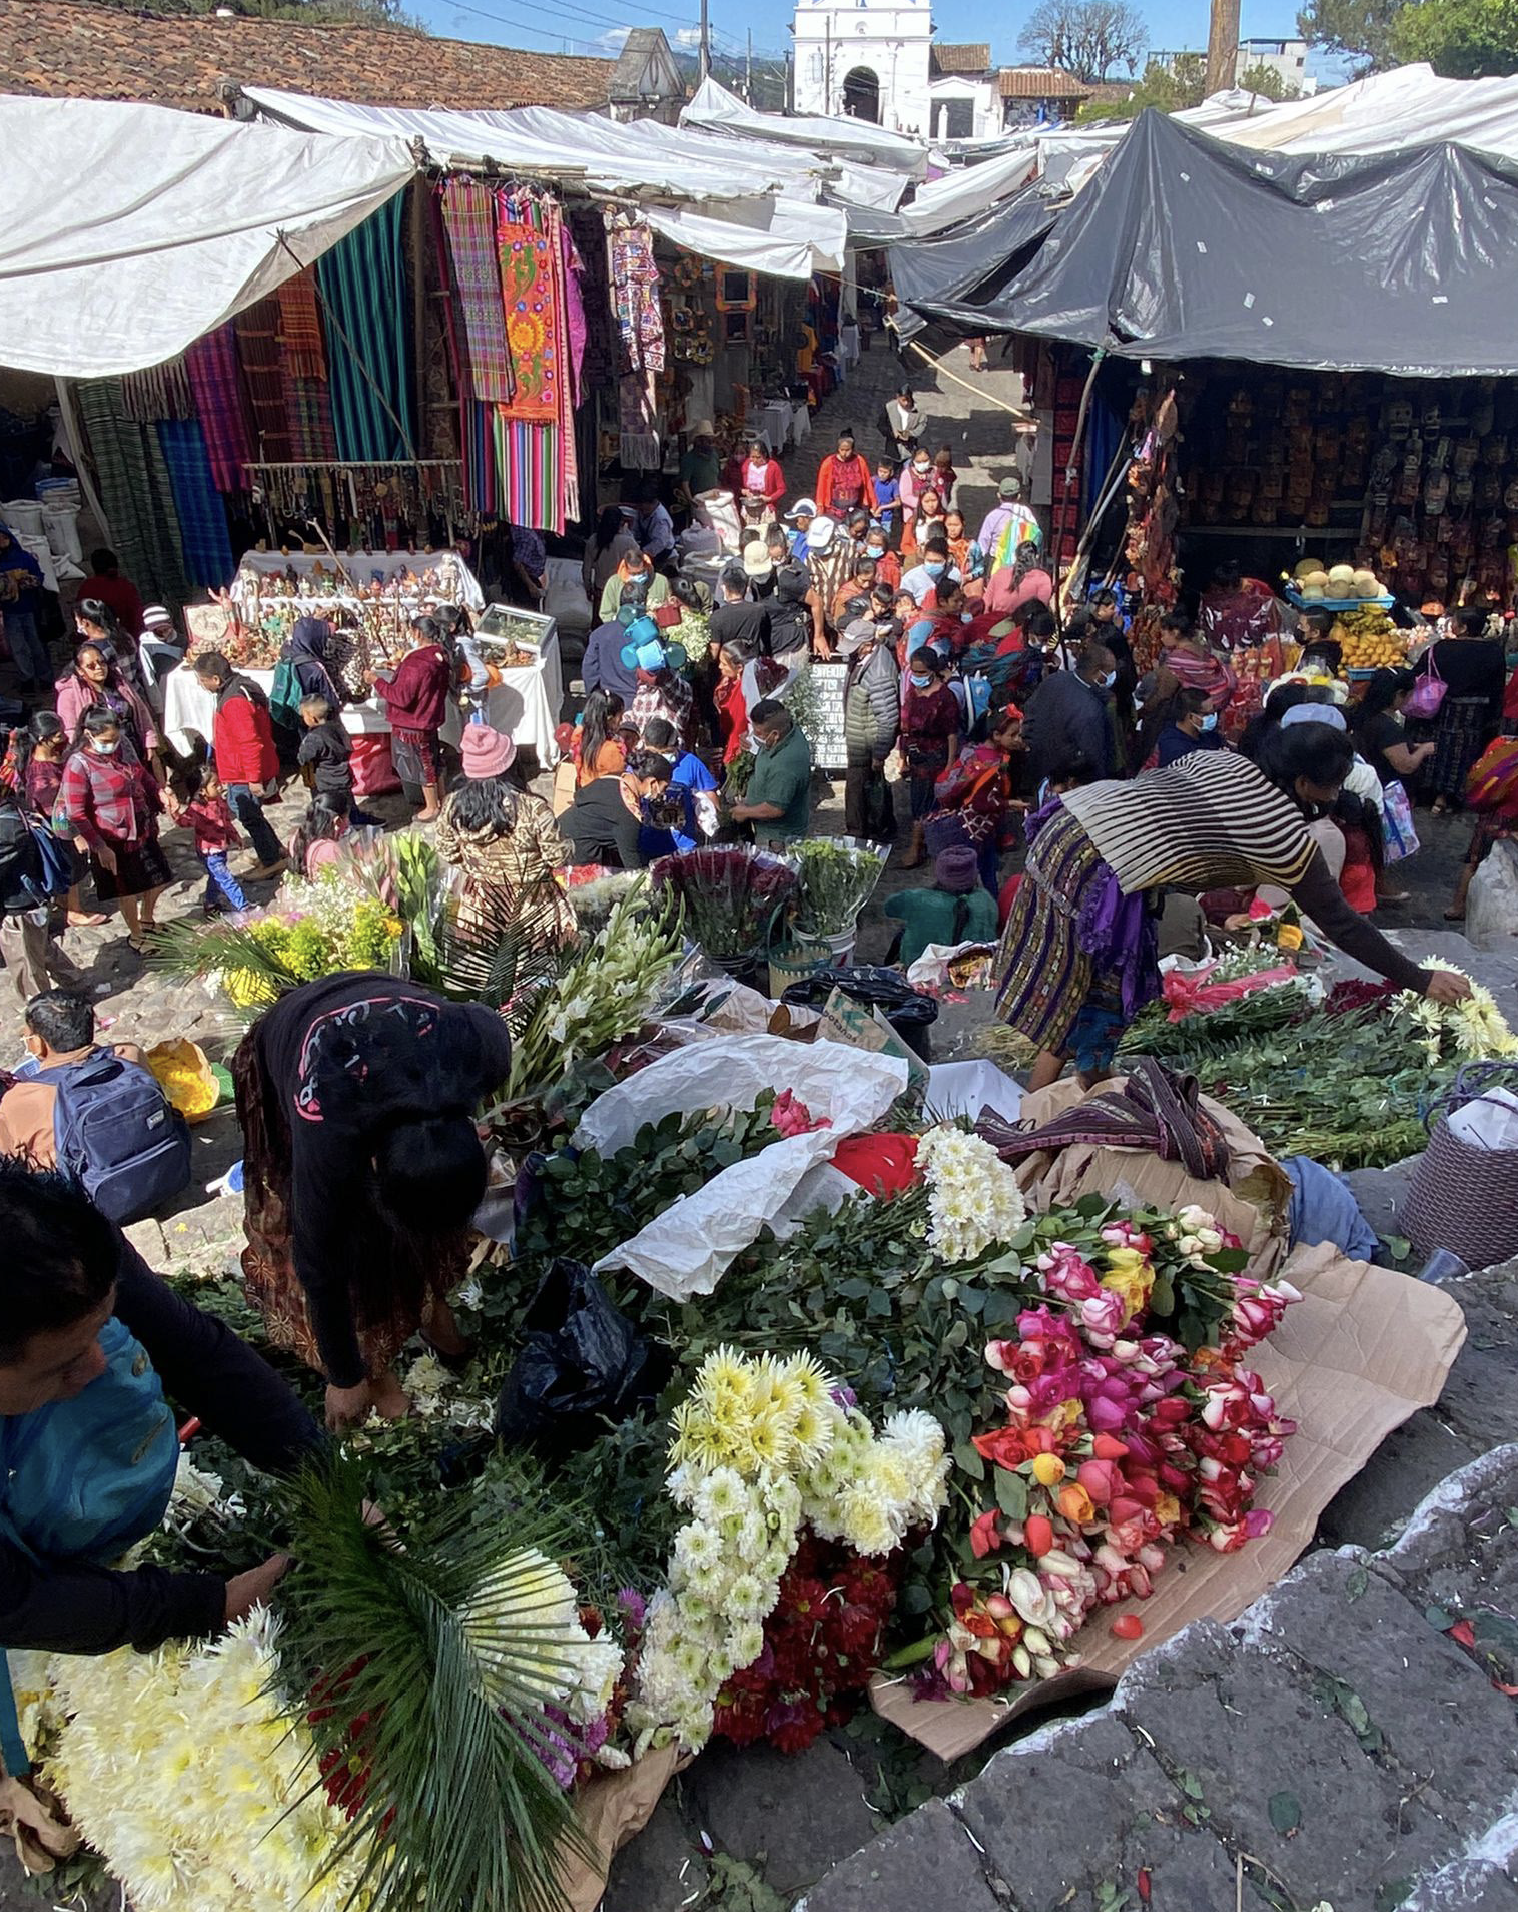 El mercado de Chichicastenango (Quiché) es uno de los mayores de América. En él se pueden encontrar desde flores para ofrendas,
frutas y verduras hasta animales vivos u objetos de artesanía de distintas aldeas.